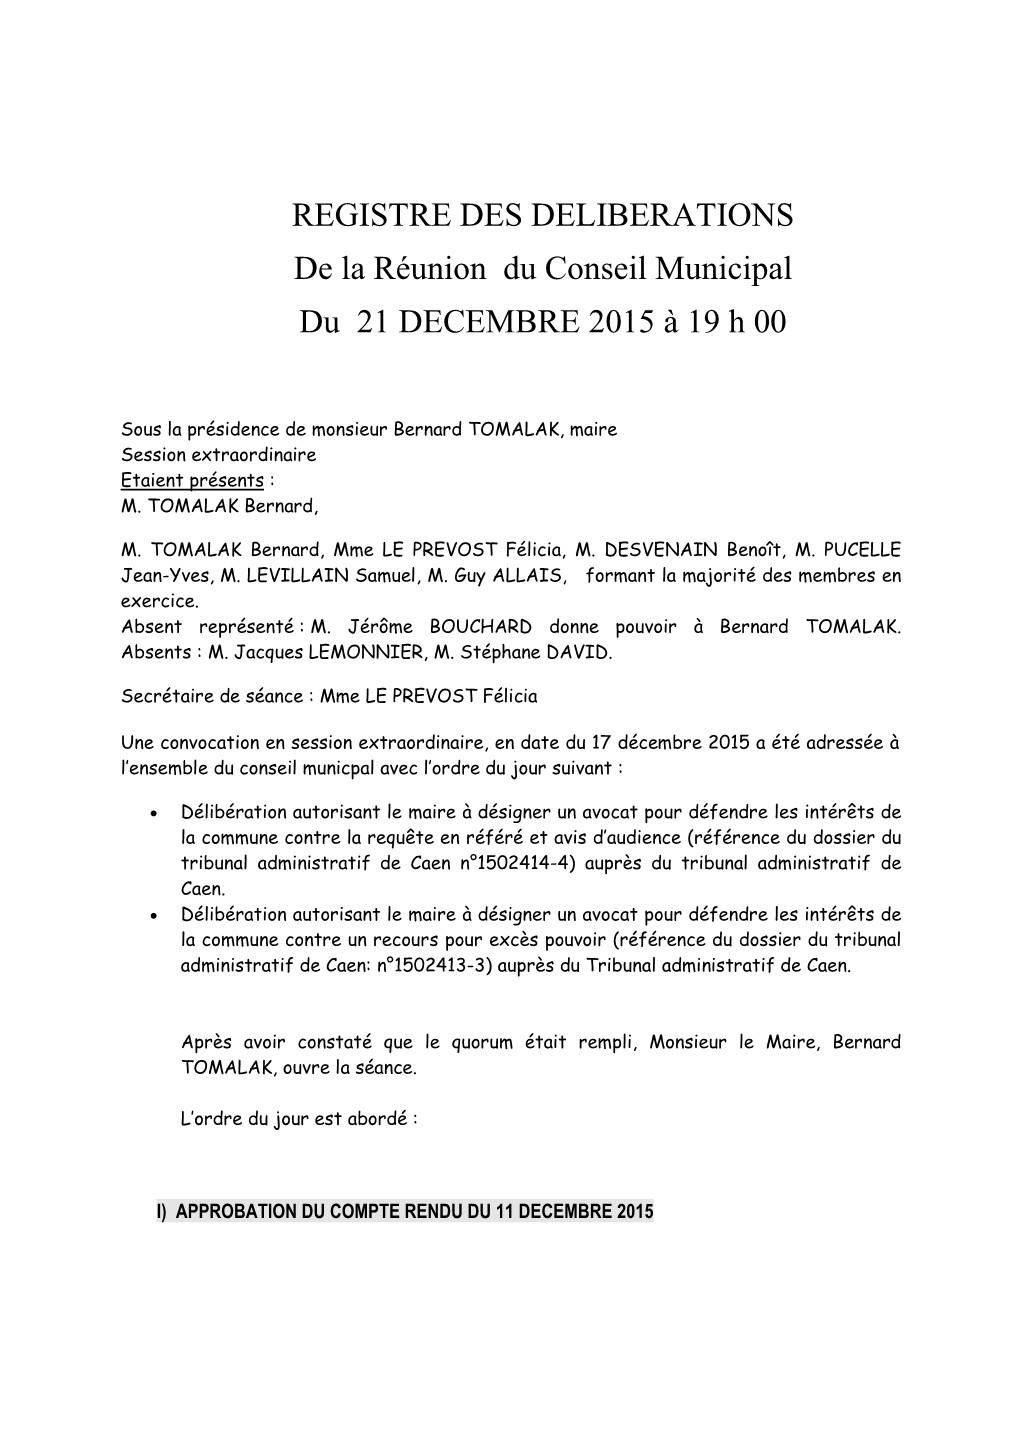 REGISTRE DES DELIBERATIONS De La Réunion Du Conseil Municipal